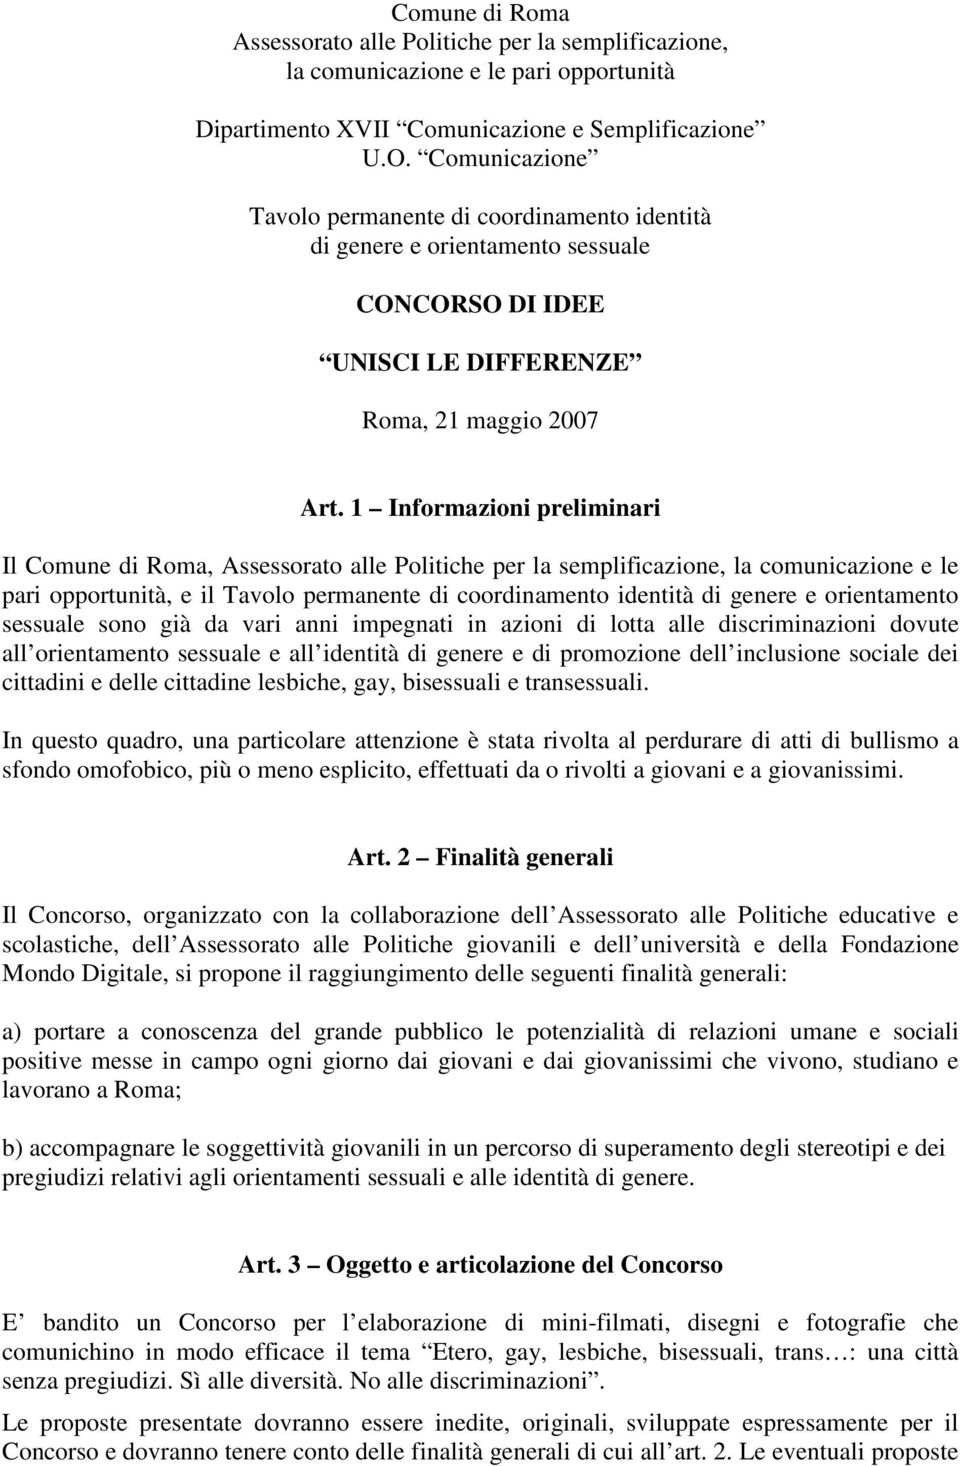 1 Informazioni preliminari Il Comune di Roma, Assessorato alle Politiche per la semplificazione, la comunicazione e le pari opportunità, e il Tavolo permanente di coordinamento identità di genere e